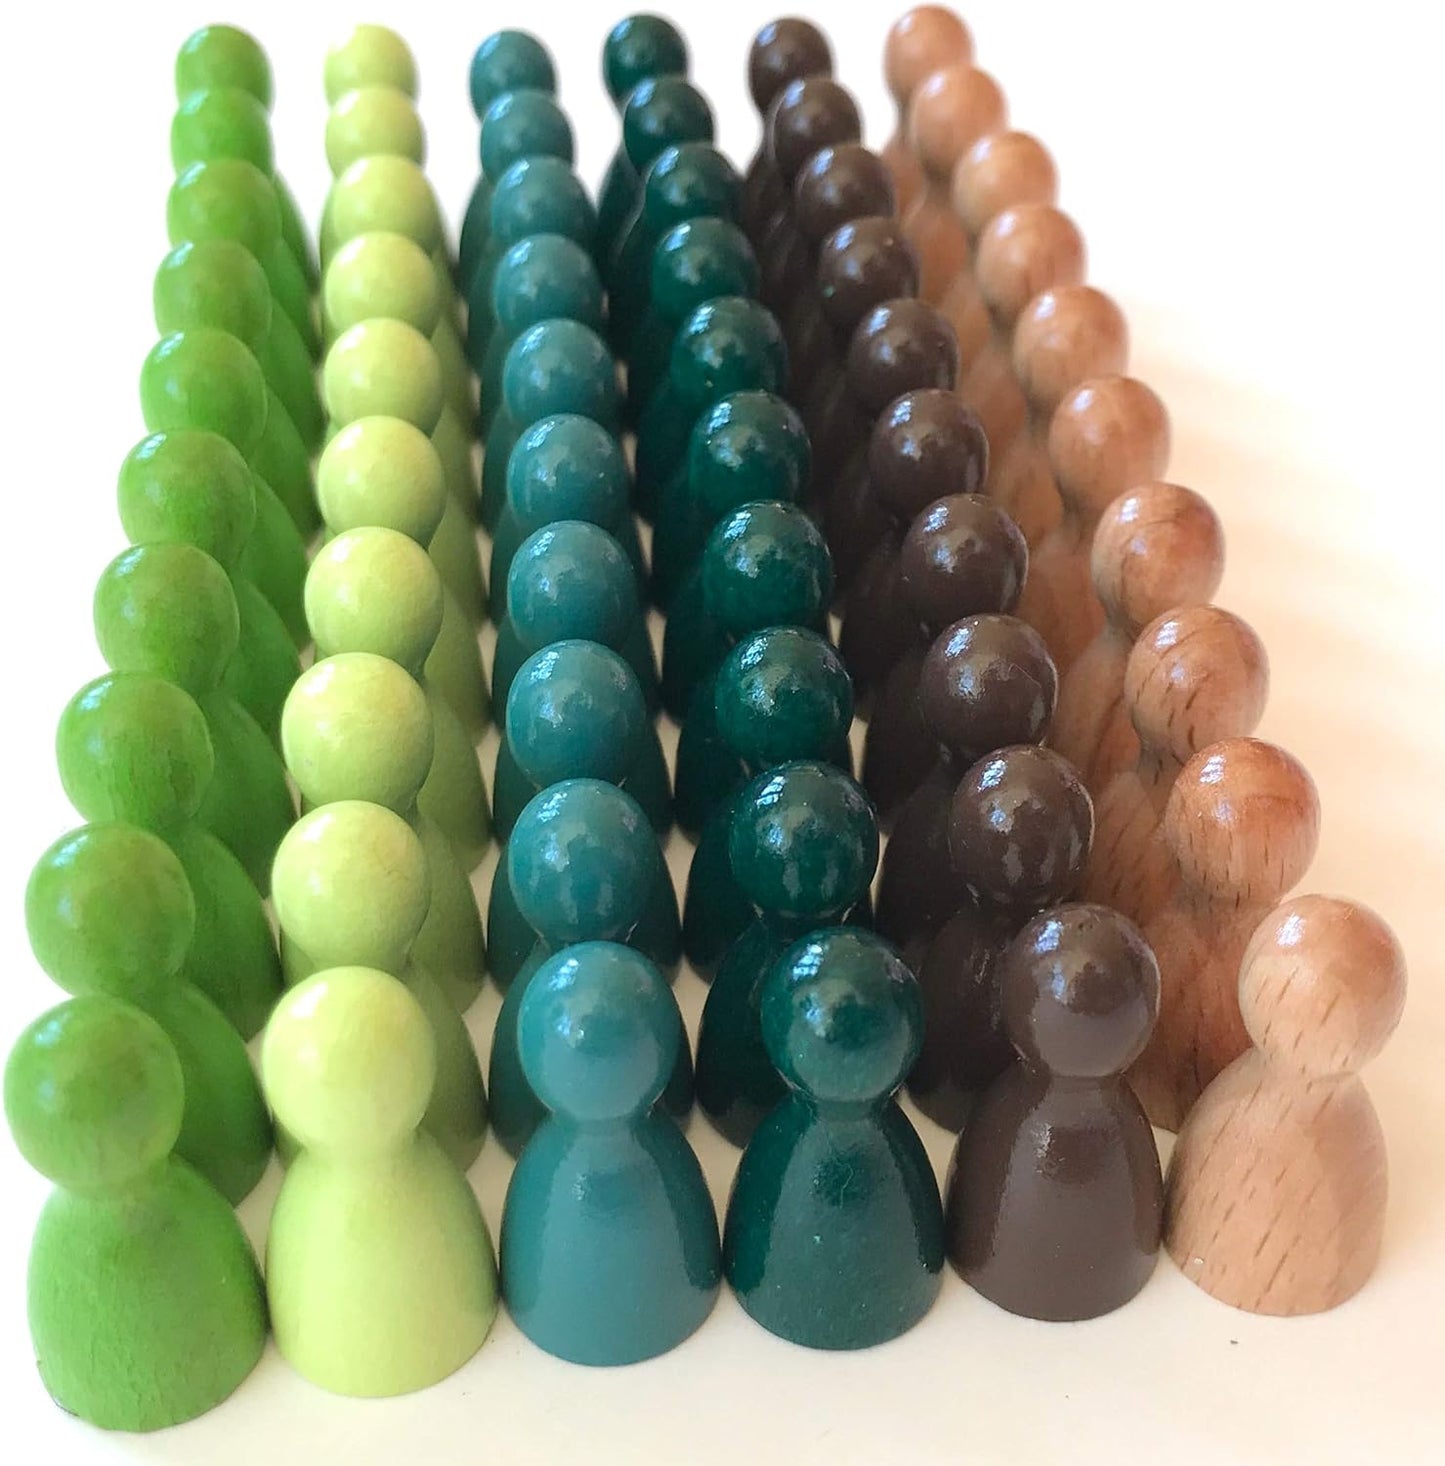 Spieltz Spielsteine - Halmakegel aus Holz Standardgröße 12/24 mm, 60 Stück, farblich gemischt, verschiedene Farbsets verfügbar